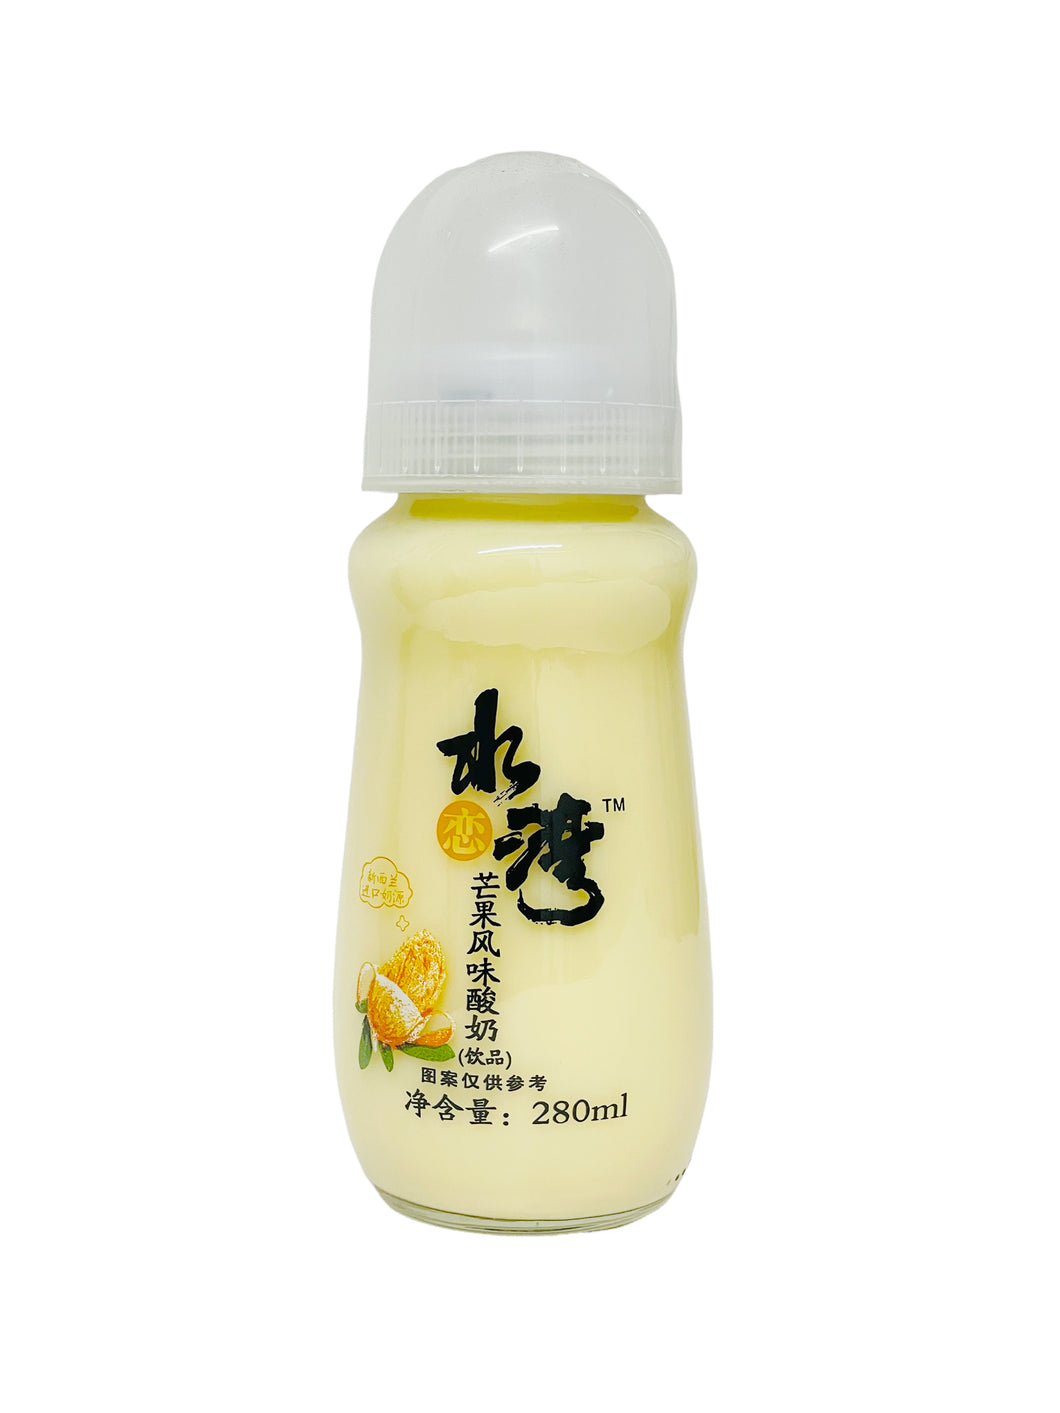 SLW Yogurt Mango 280ml 水恋湾芒果风味酸奶芒果